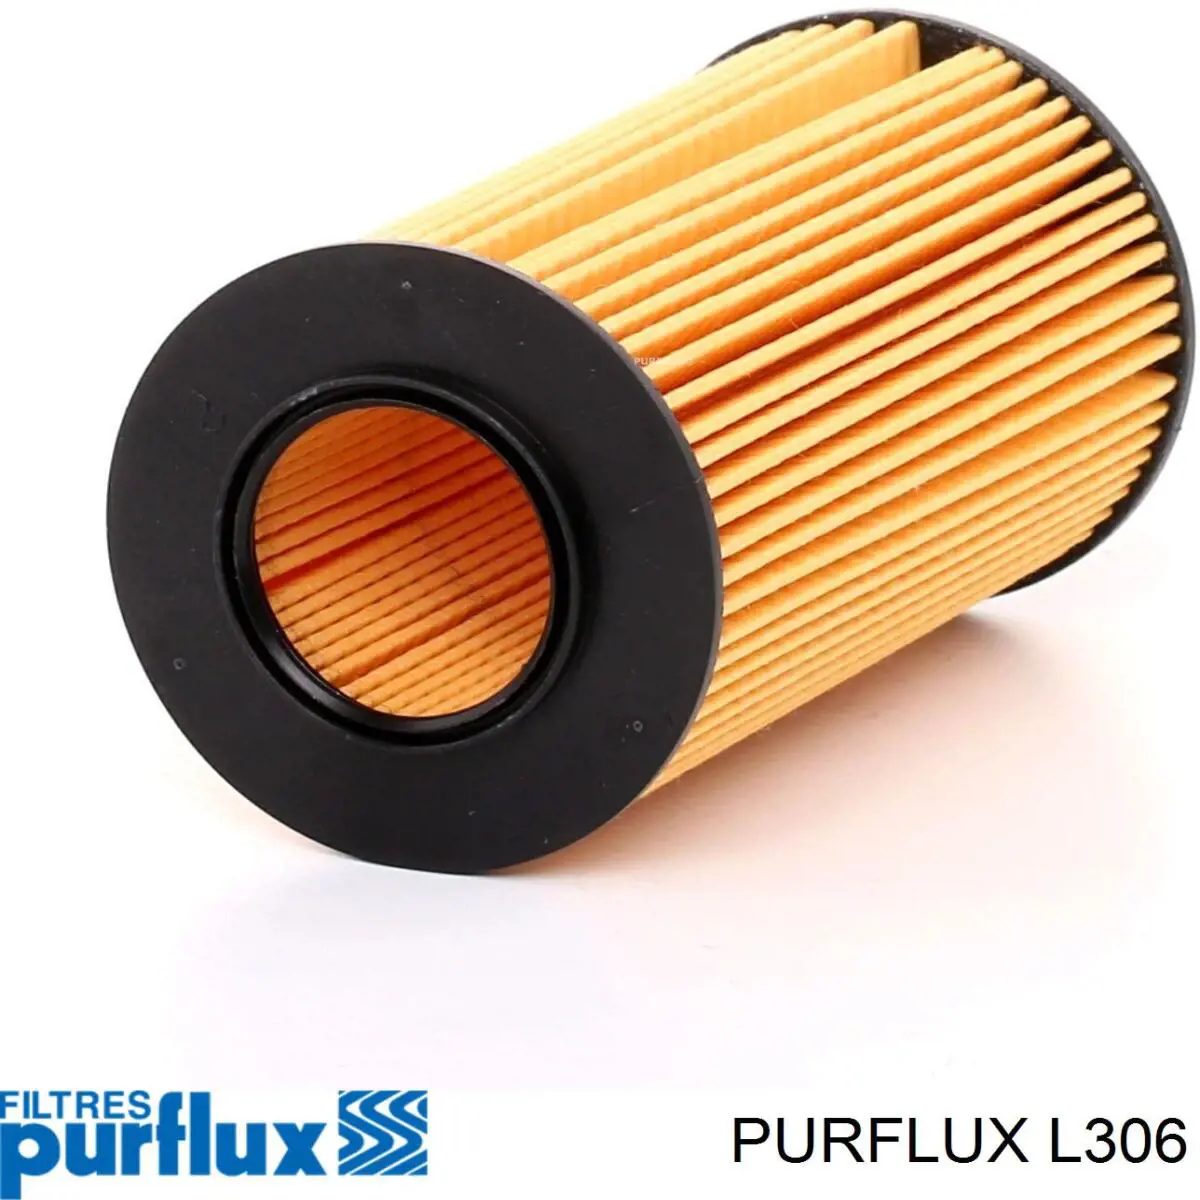 L306 Purflux filtro de aceite